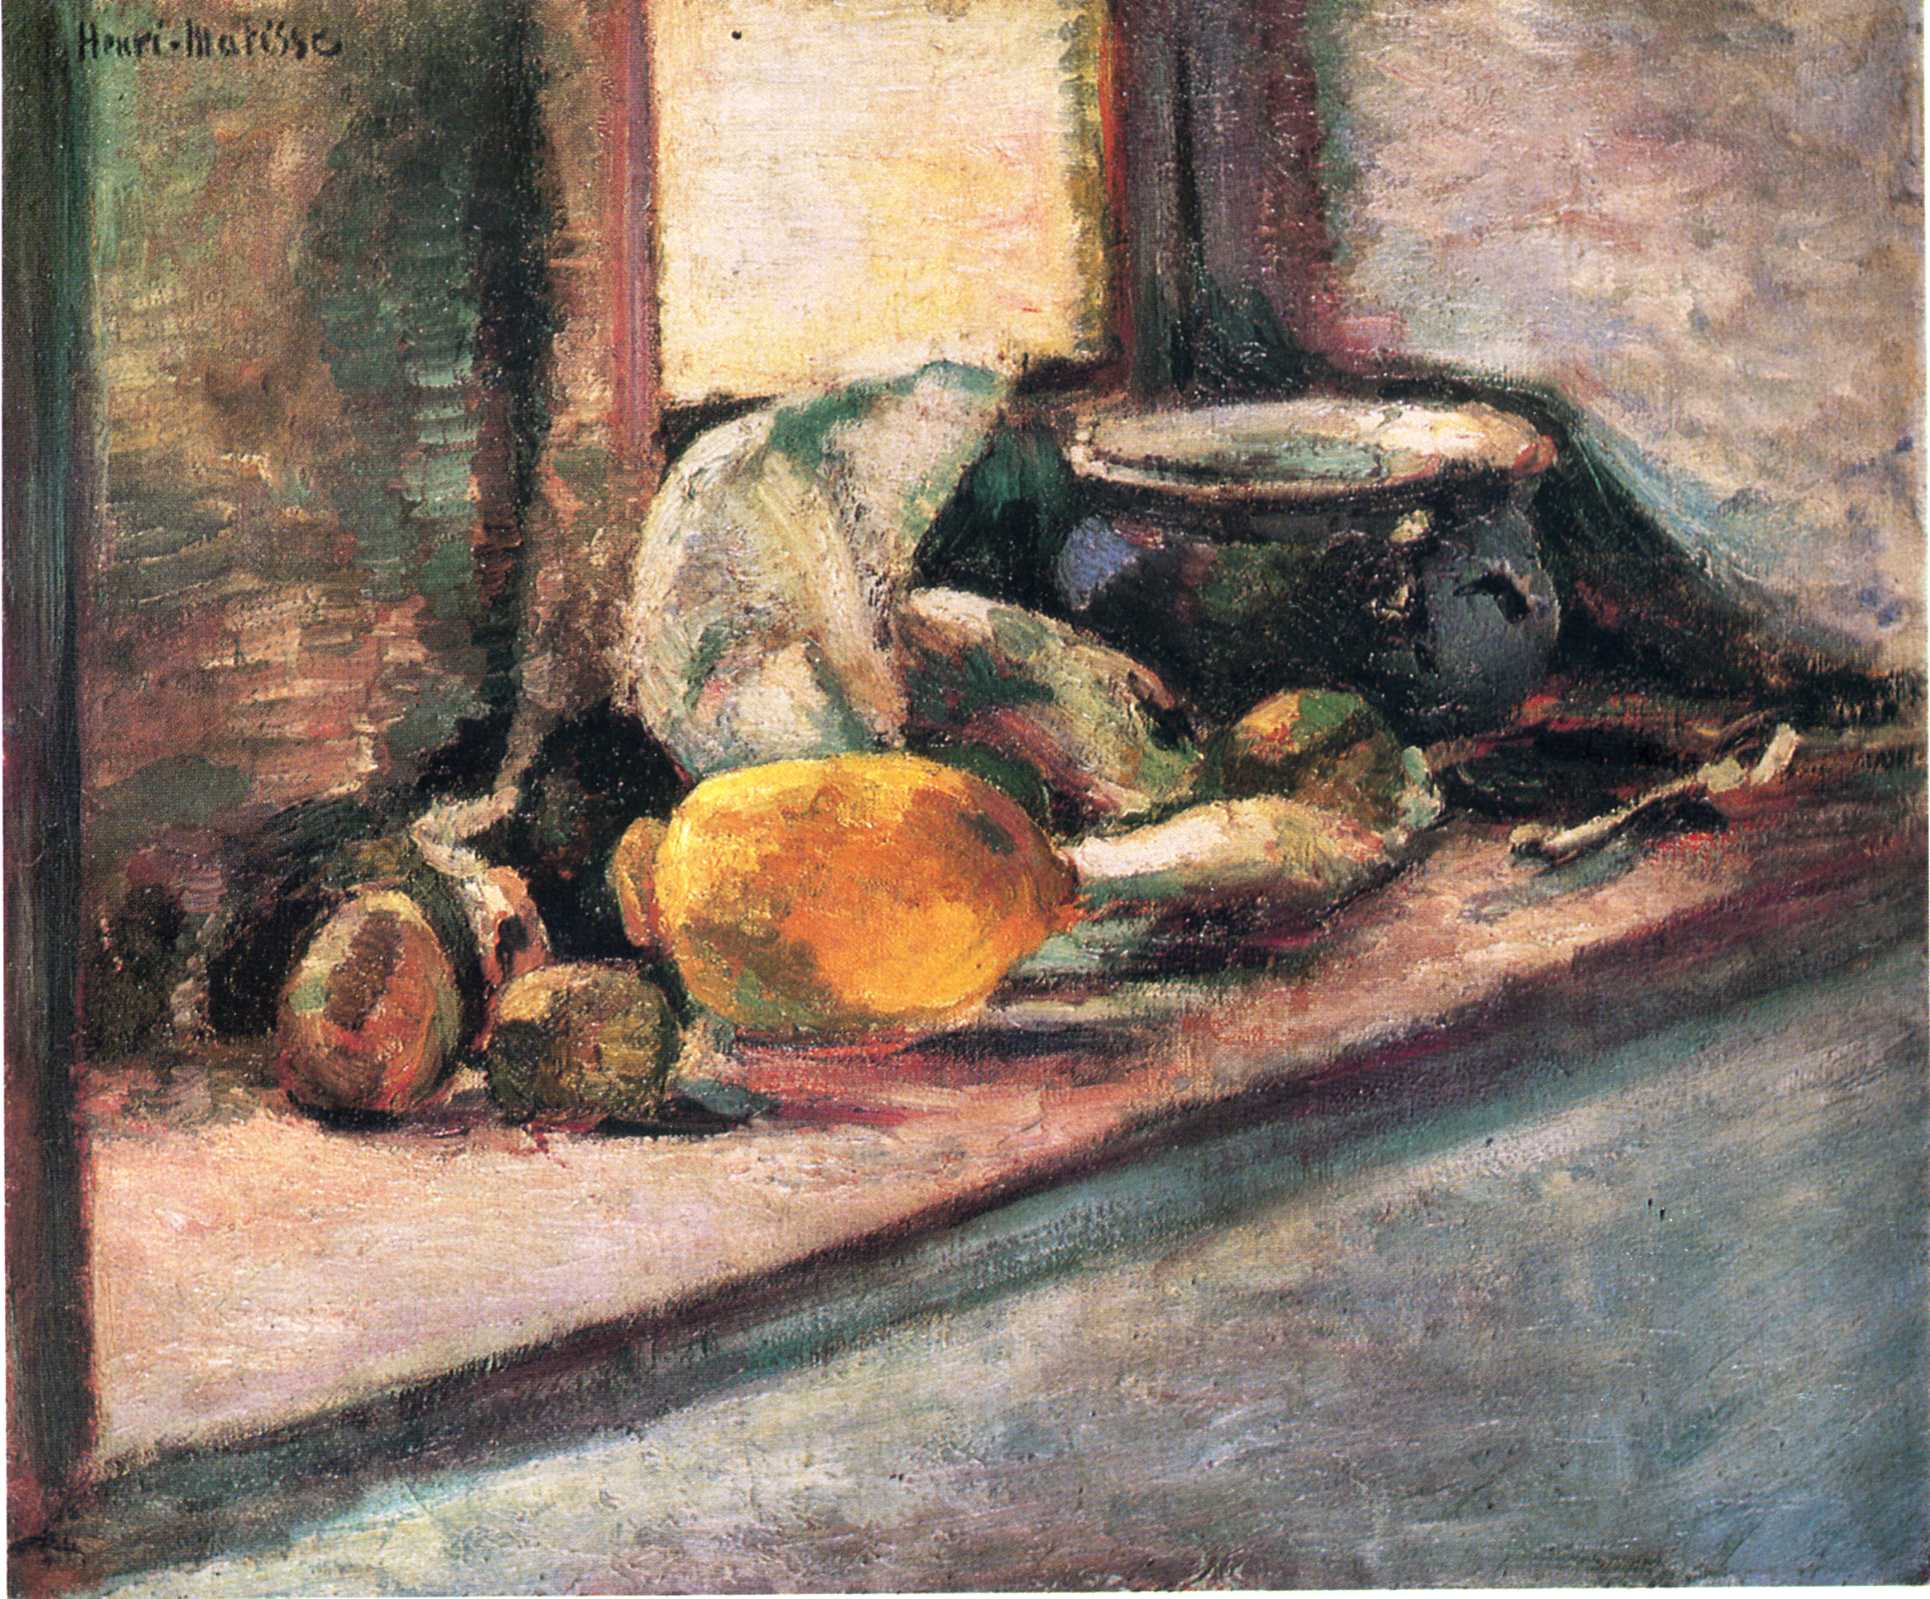 Blue Pot and Lemon (1897).